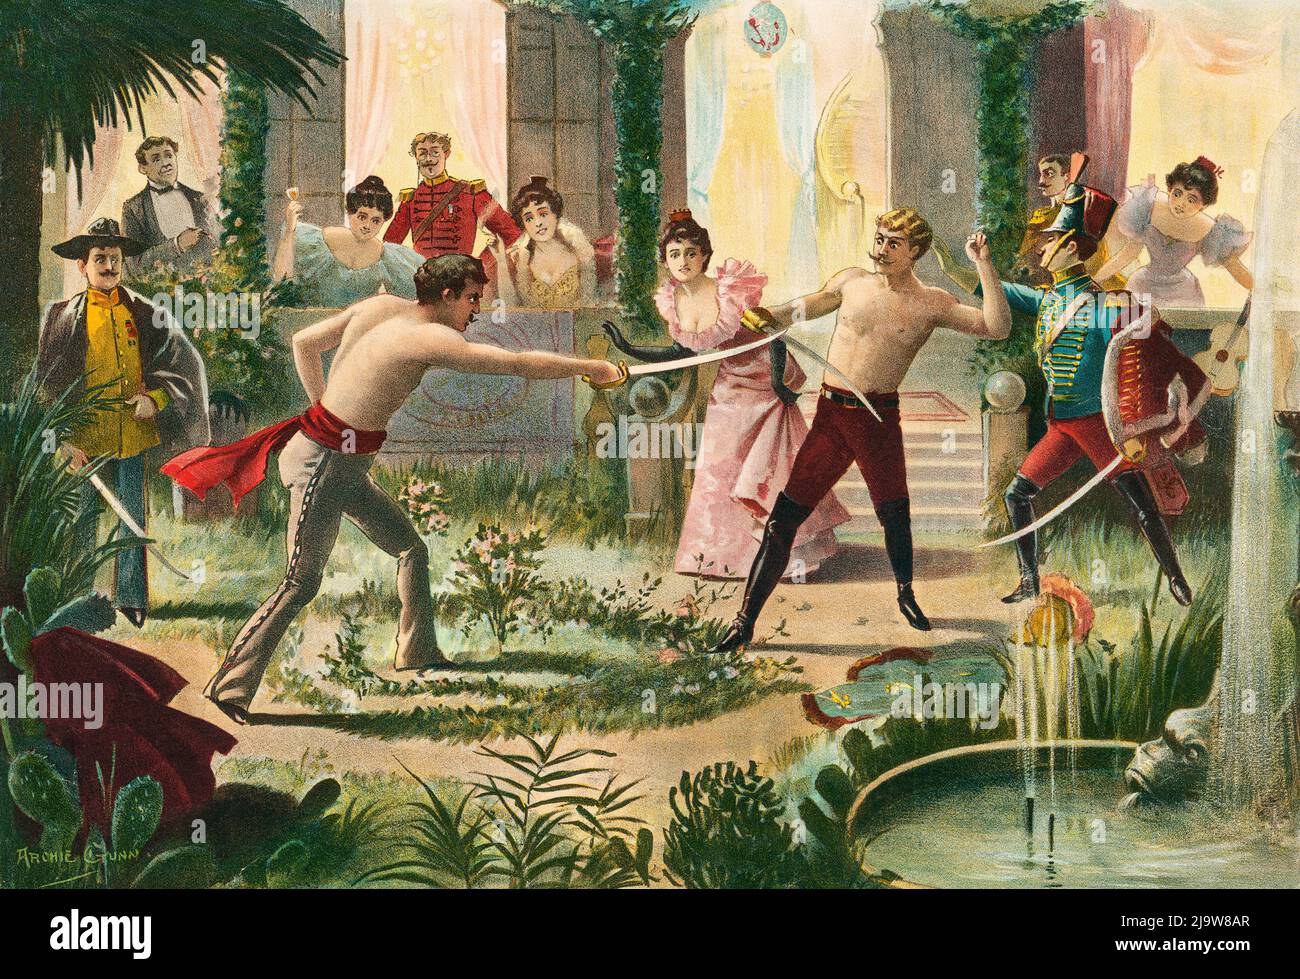 Eine Illustration von Archie Gunn (1863-1930) eines Duell-Schwert-Kampfes in einem Innenhof, die auf einem Plakat mit dem Roman „A Passing Emperor“ von Robert Shortz verwendet wurde. Stockfoto